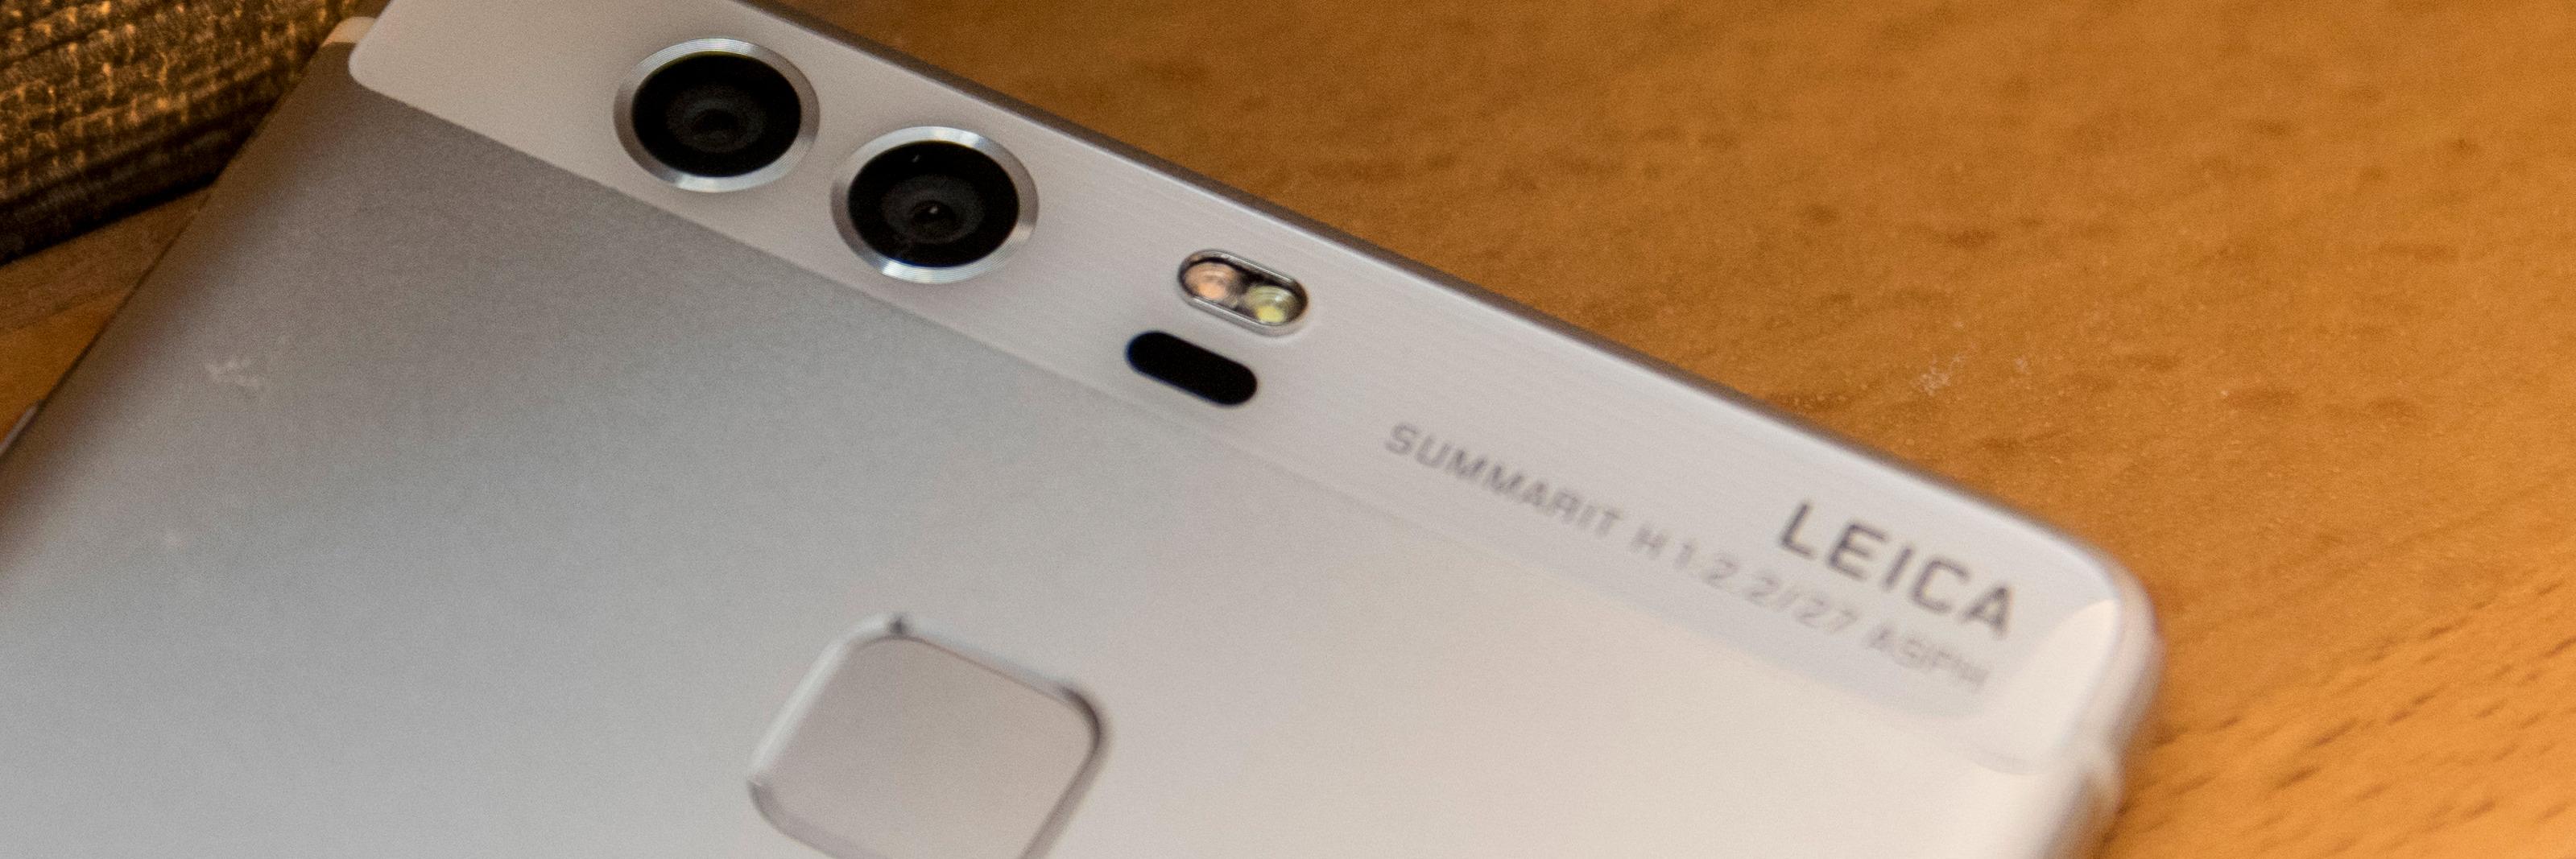 Huawei gjorde et stort poeng ut av denne Leica-logoen, uten at vi eeeegentlig merker så veldig mye til det.